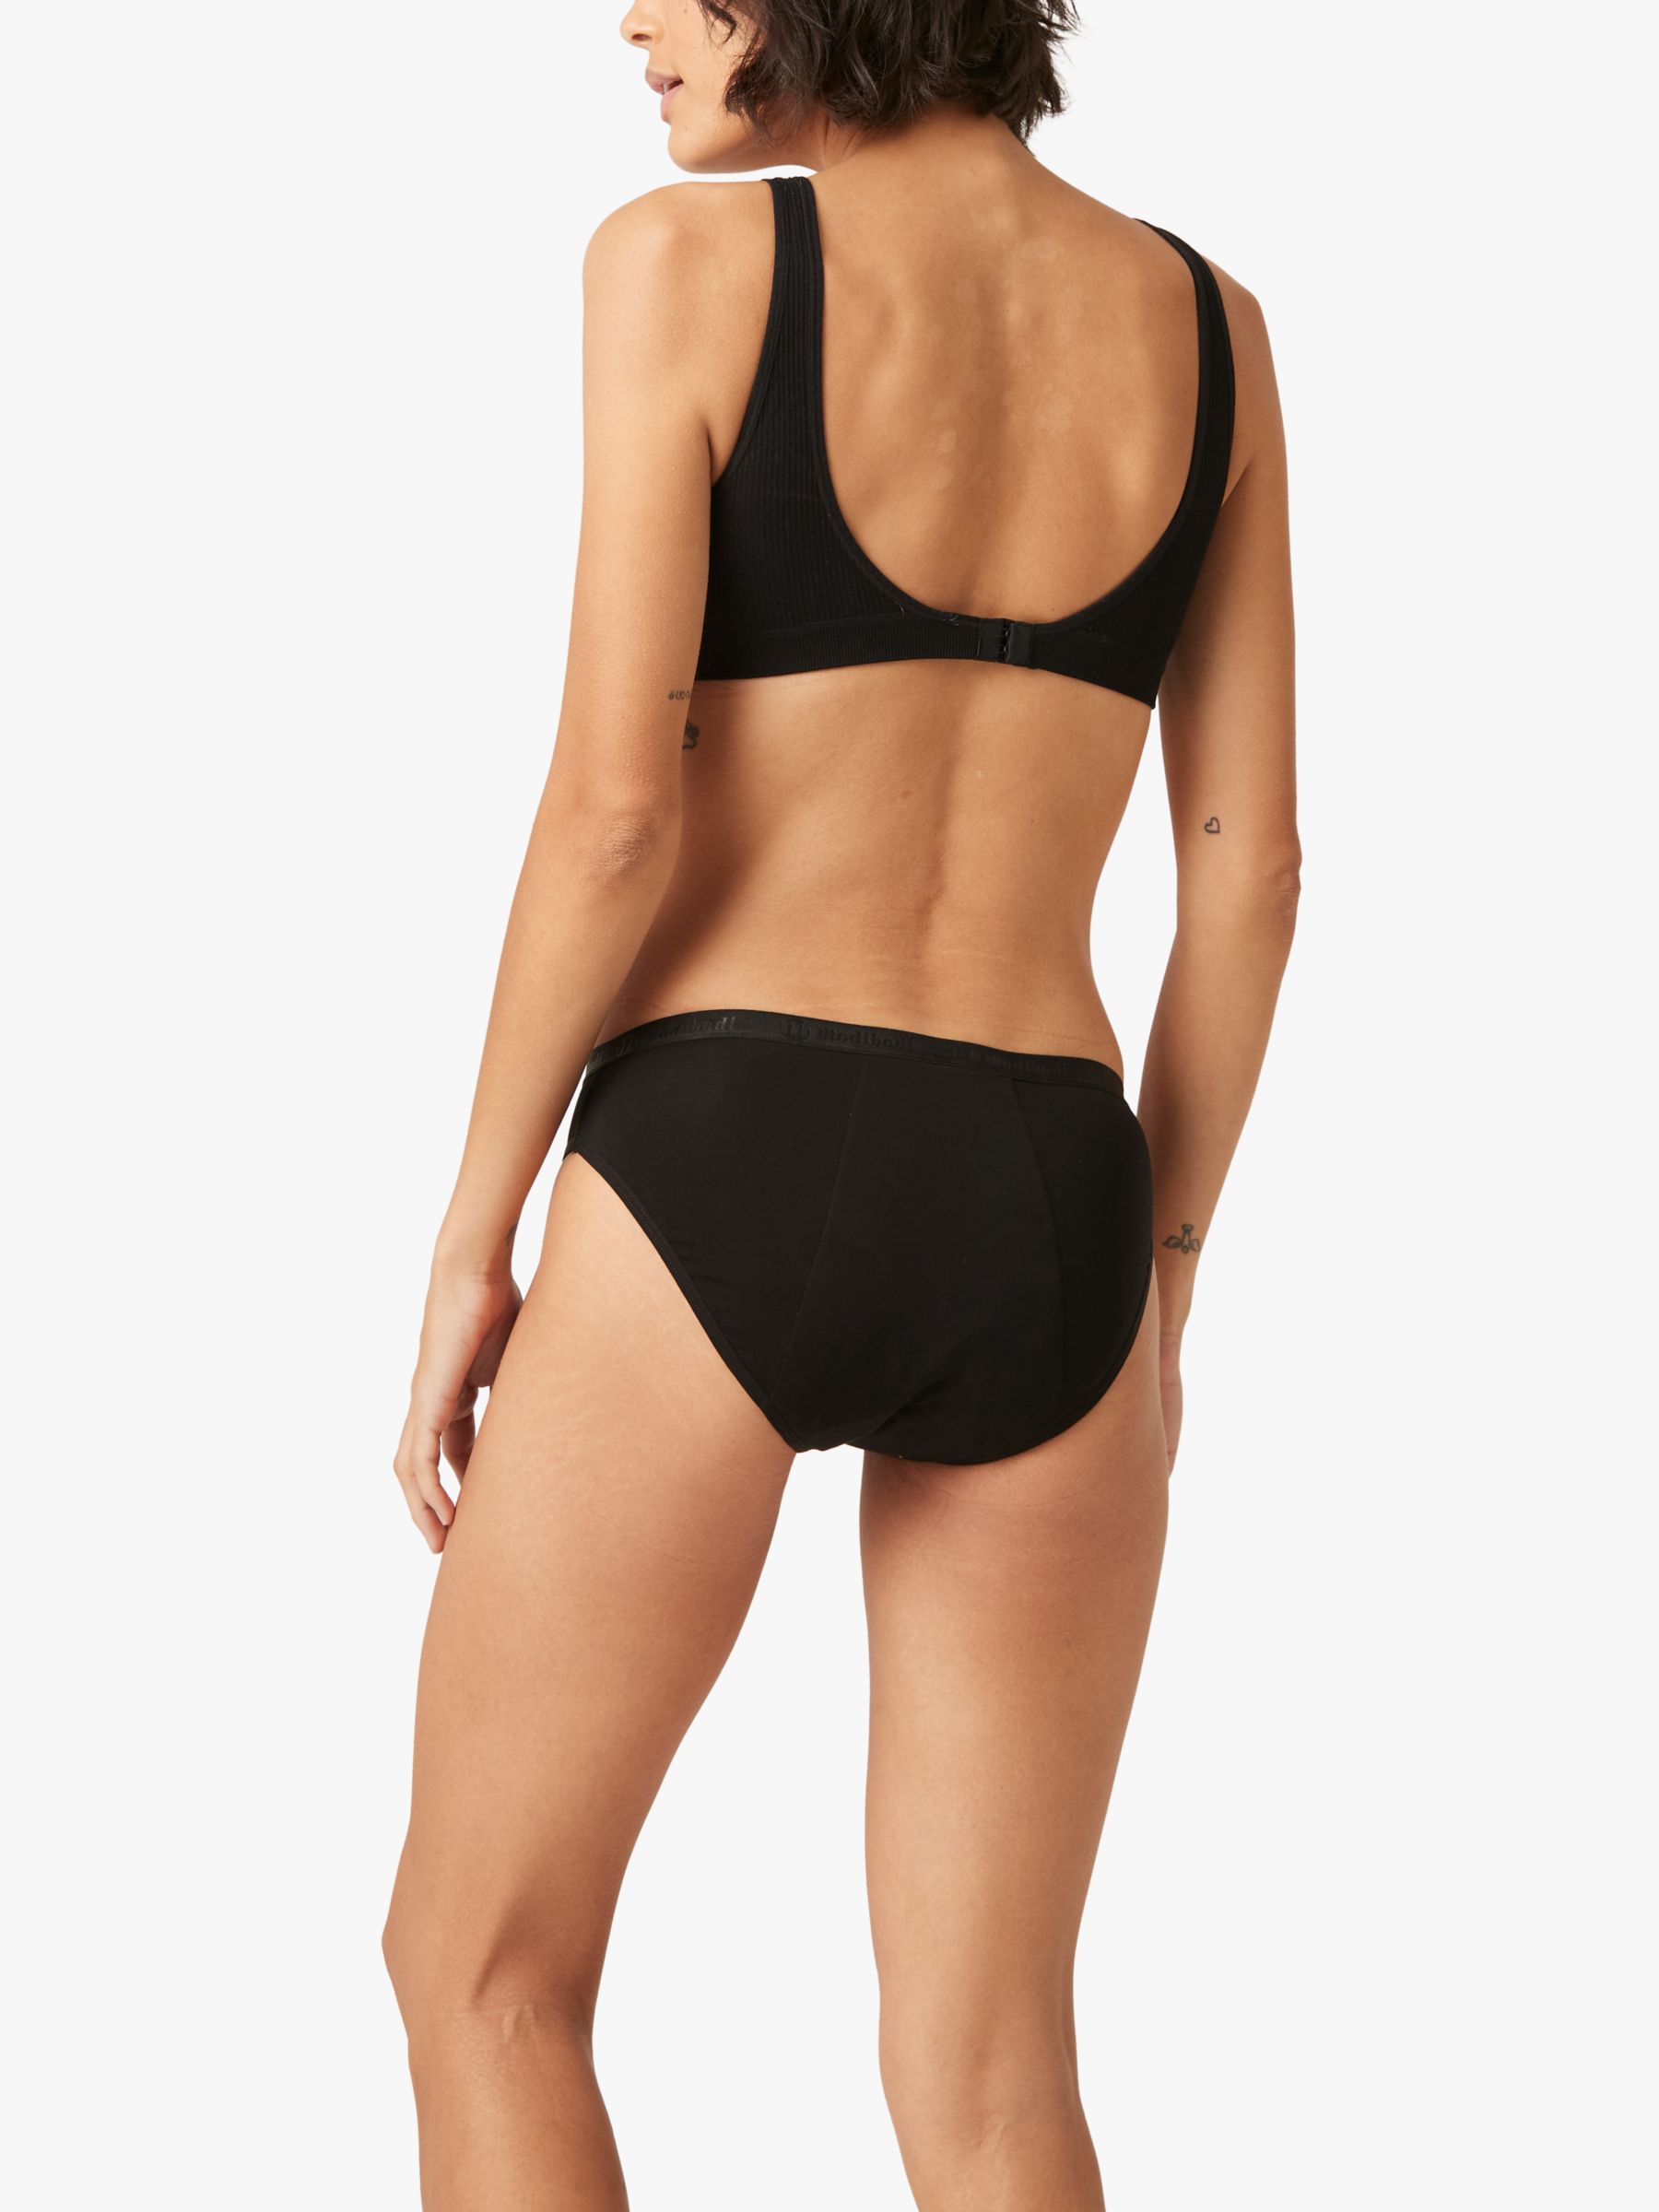 Modibodi Period Pants for Teenager Swimwear Bikini Bottoms